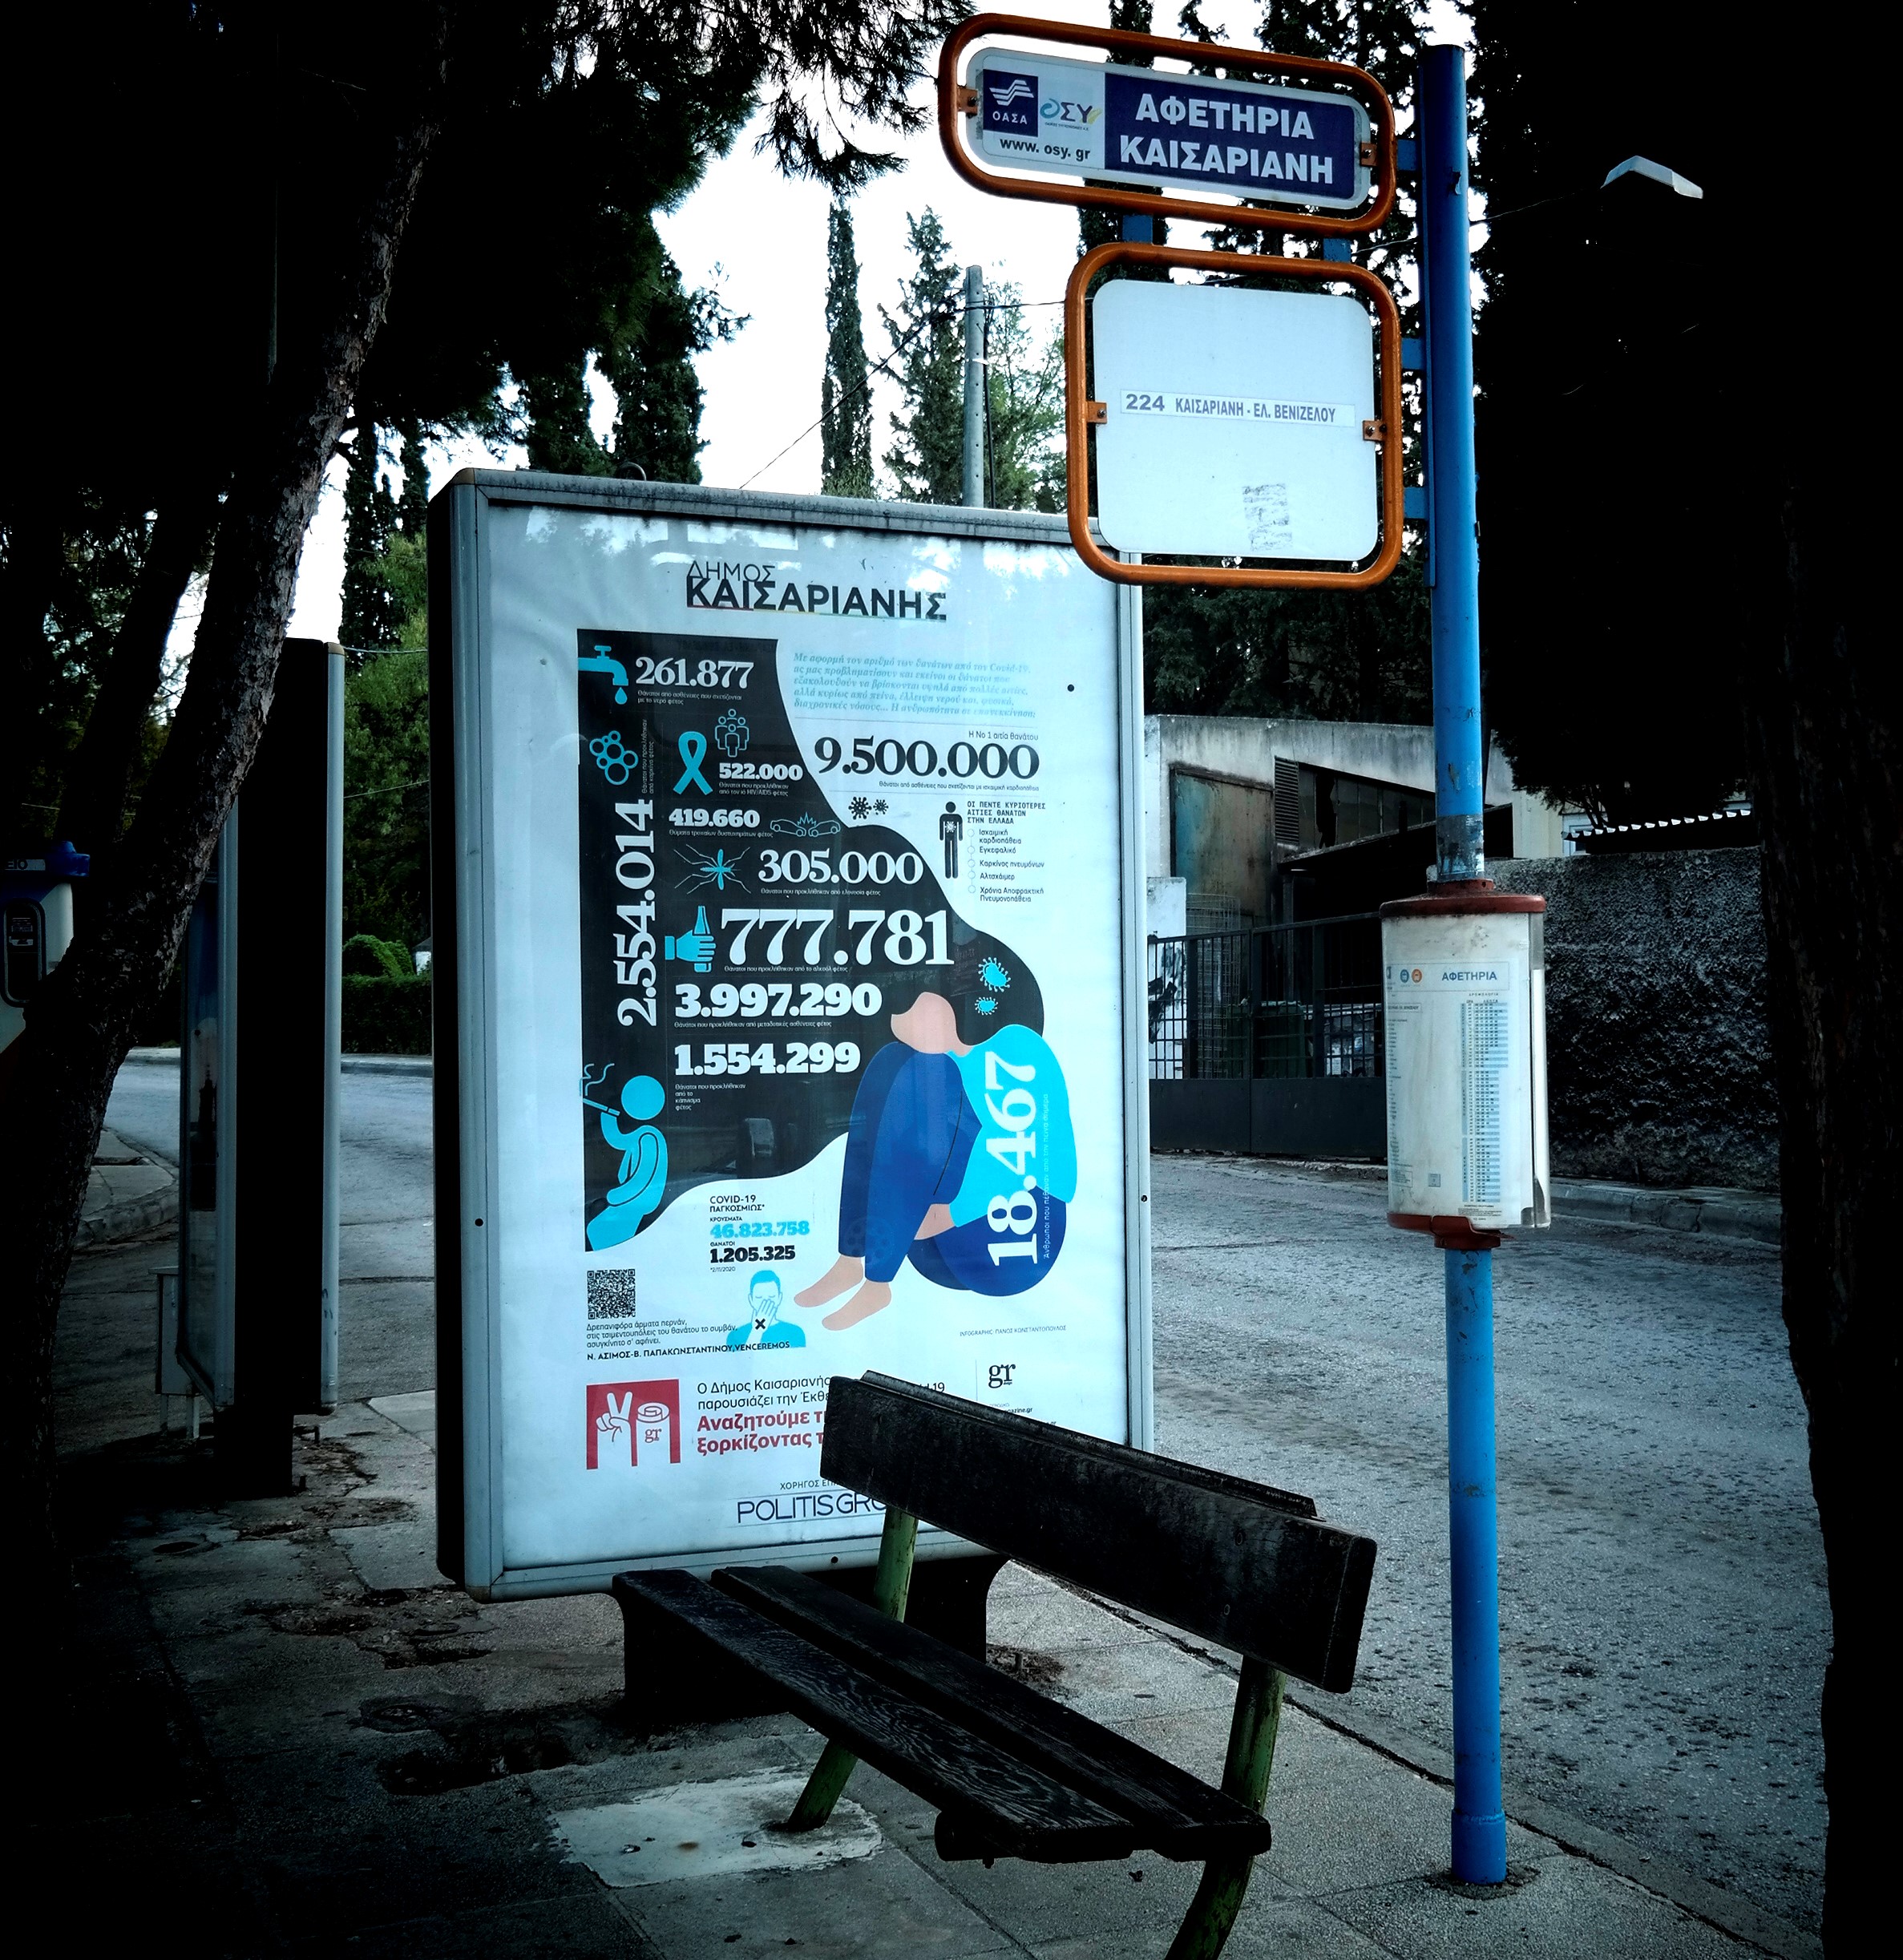 Αφίσες για την Covid-19 σε στάσεις λεωφορείων στην Αθήνα